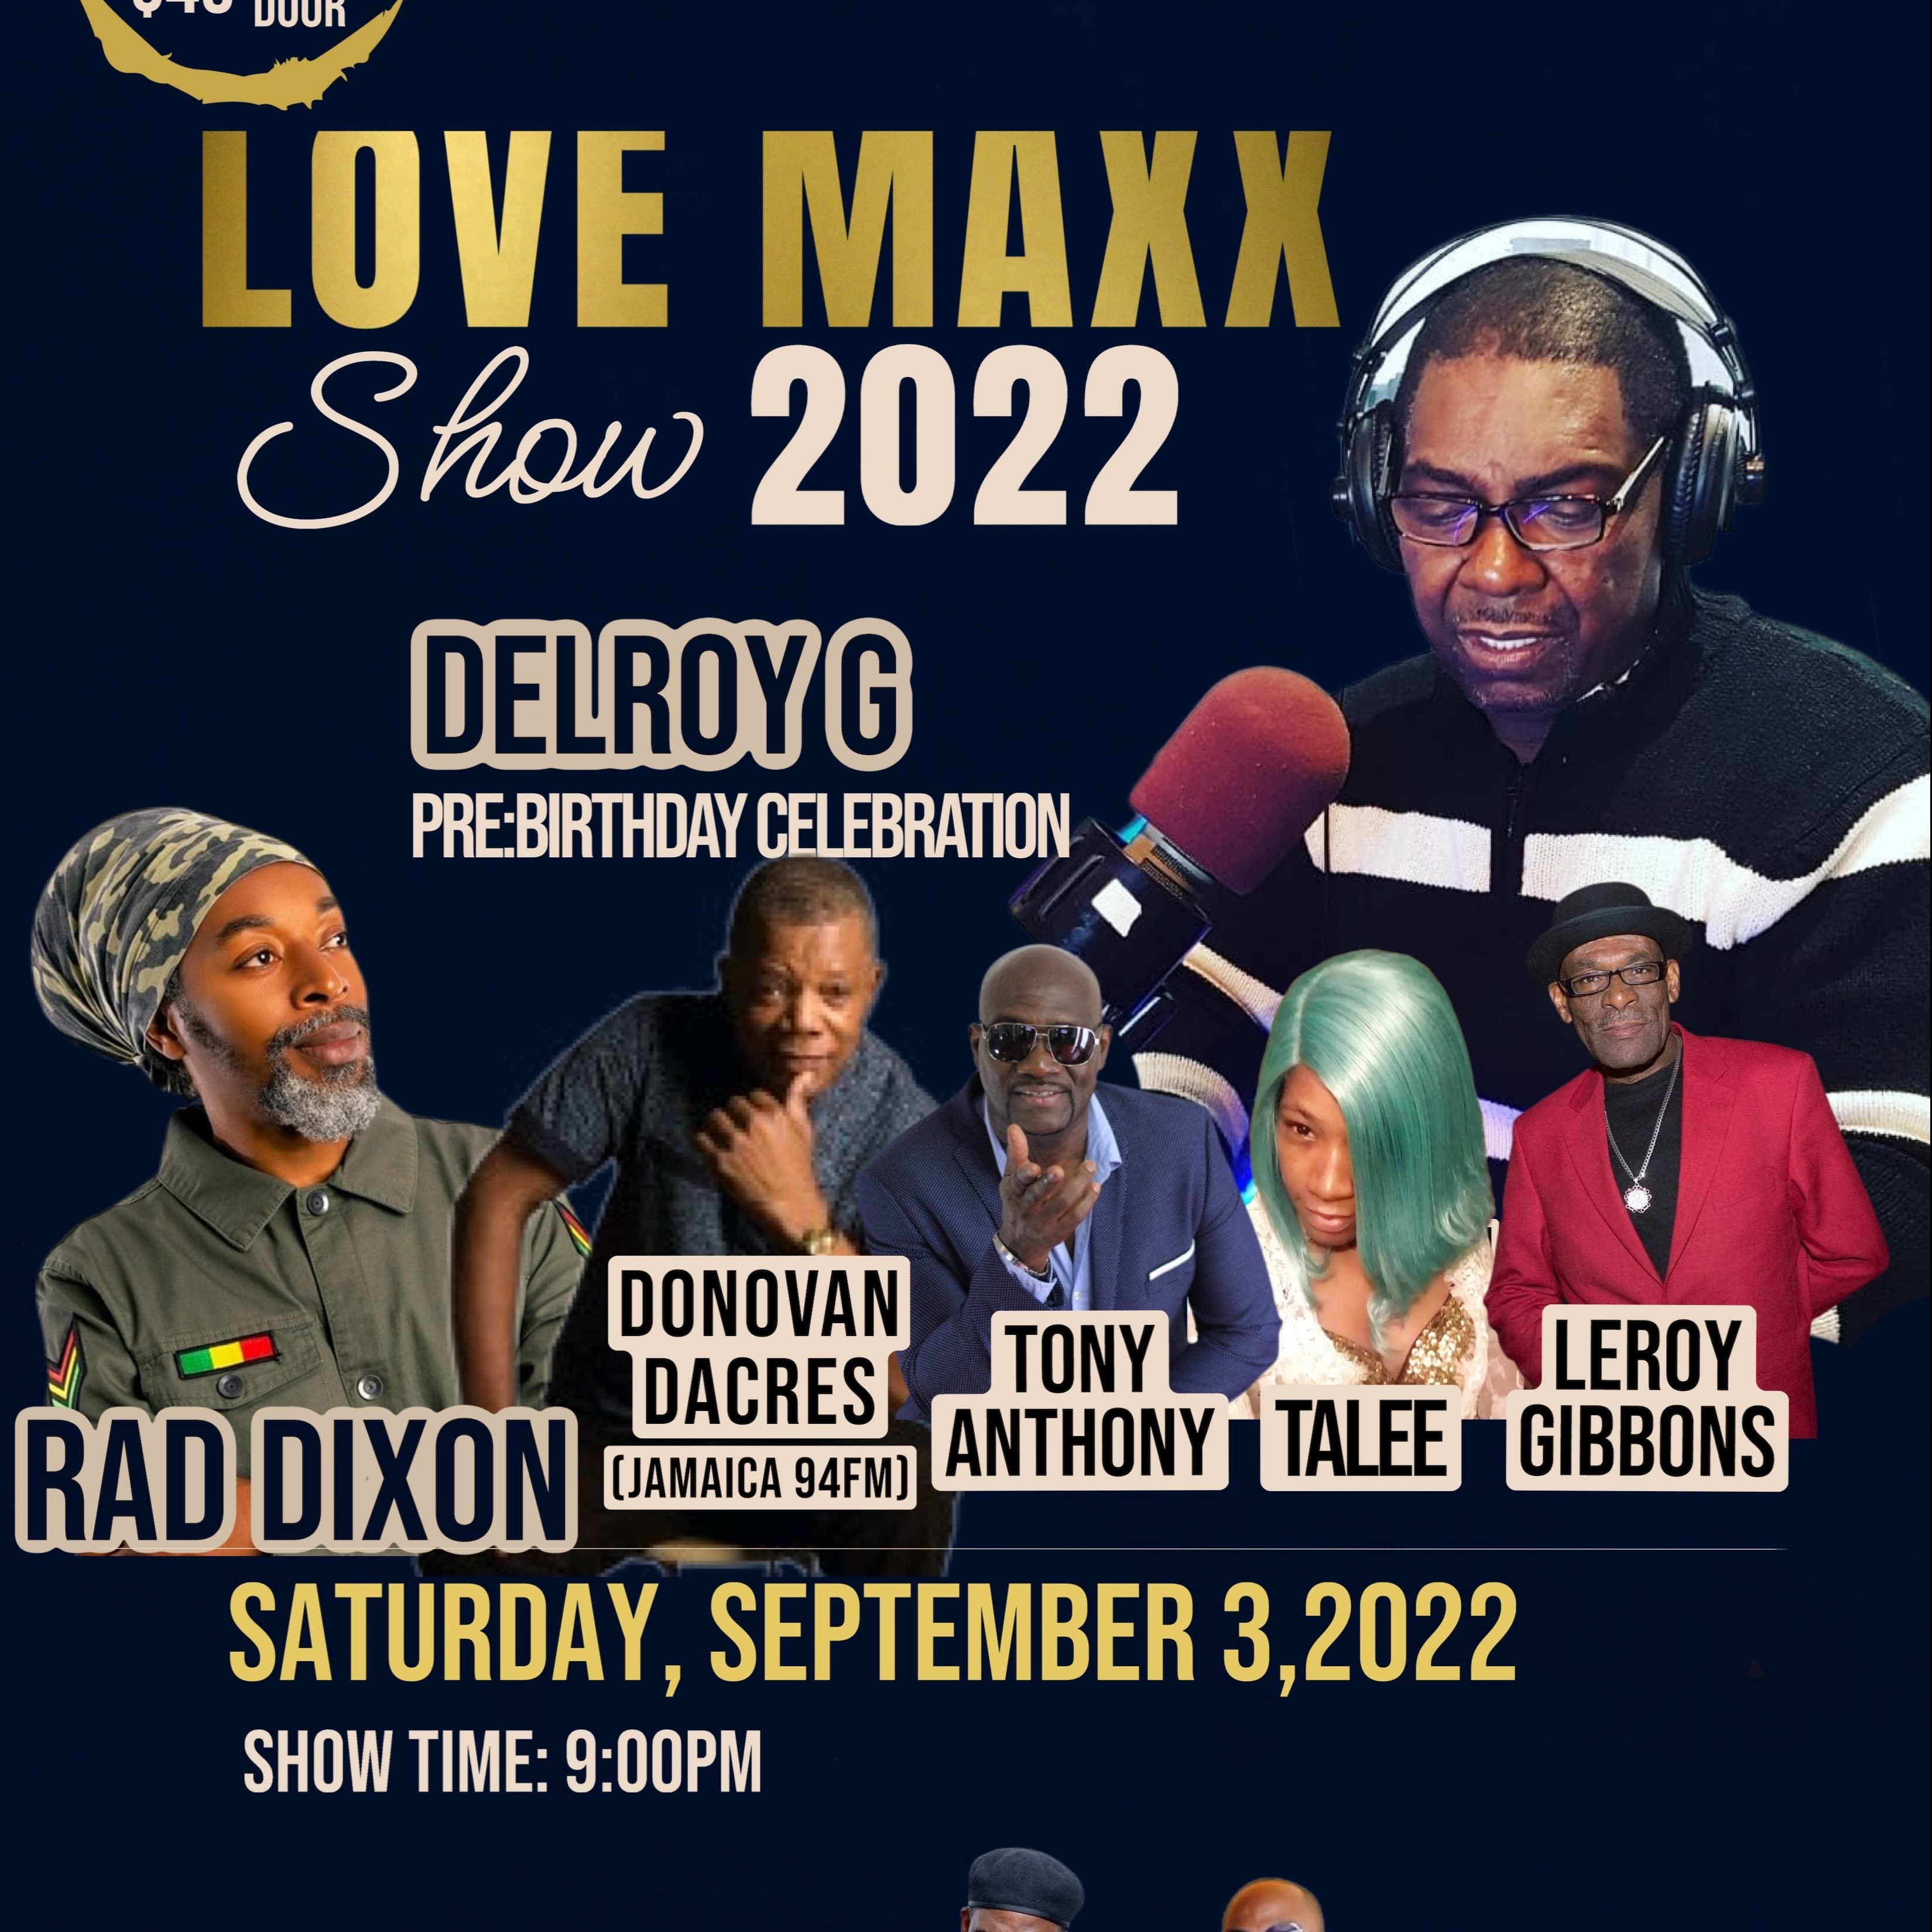 LOVE MAXX SHOW 2022